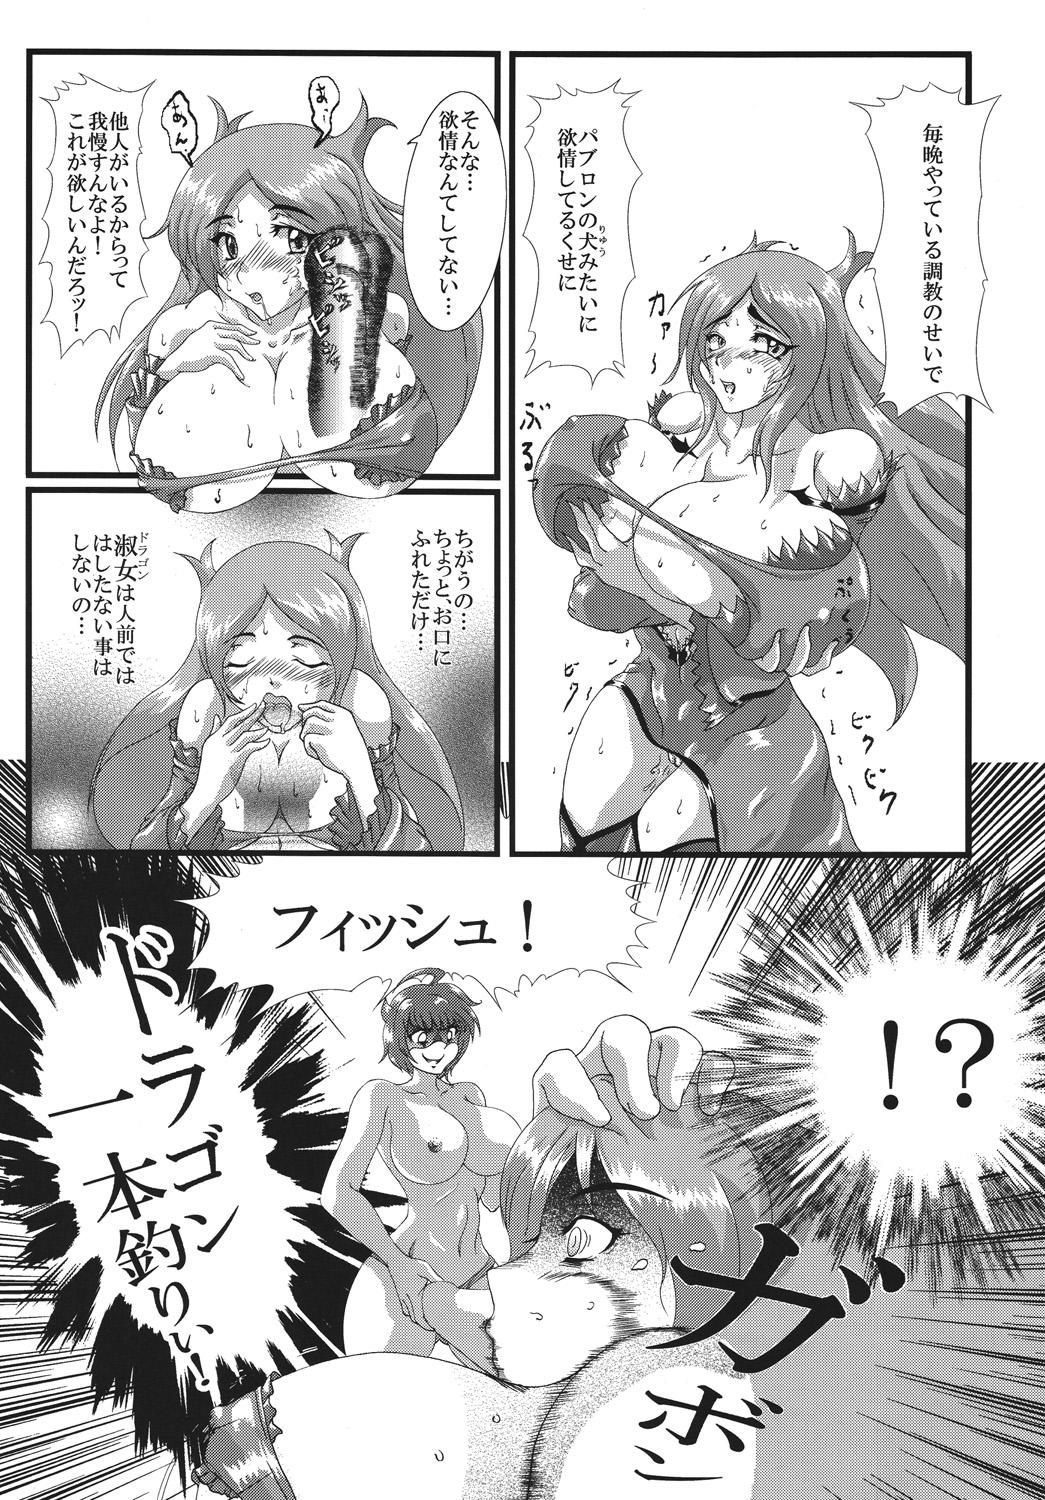 Hot Girls Getting Fucked Doragon no aru kurashi - Dragonaut Masturbates - Page 6